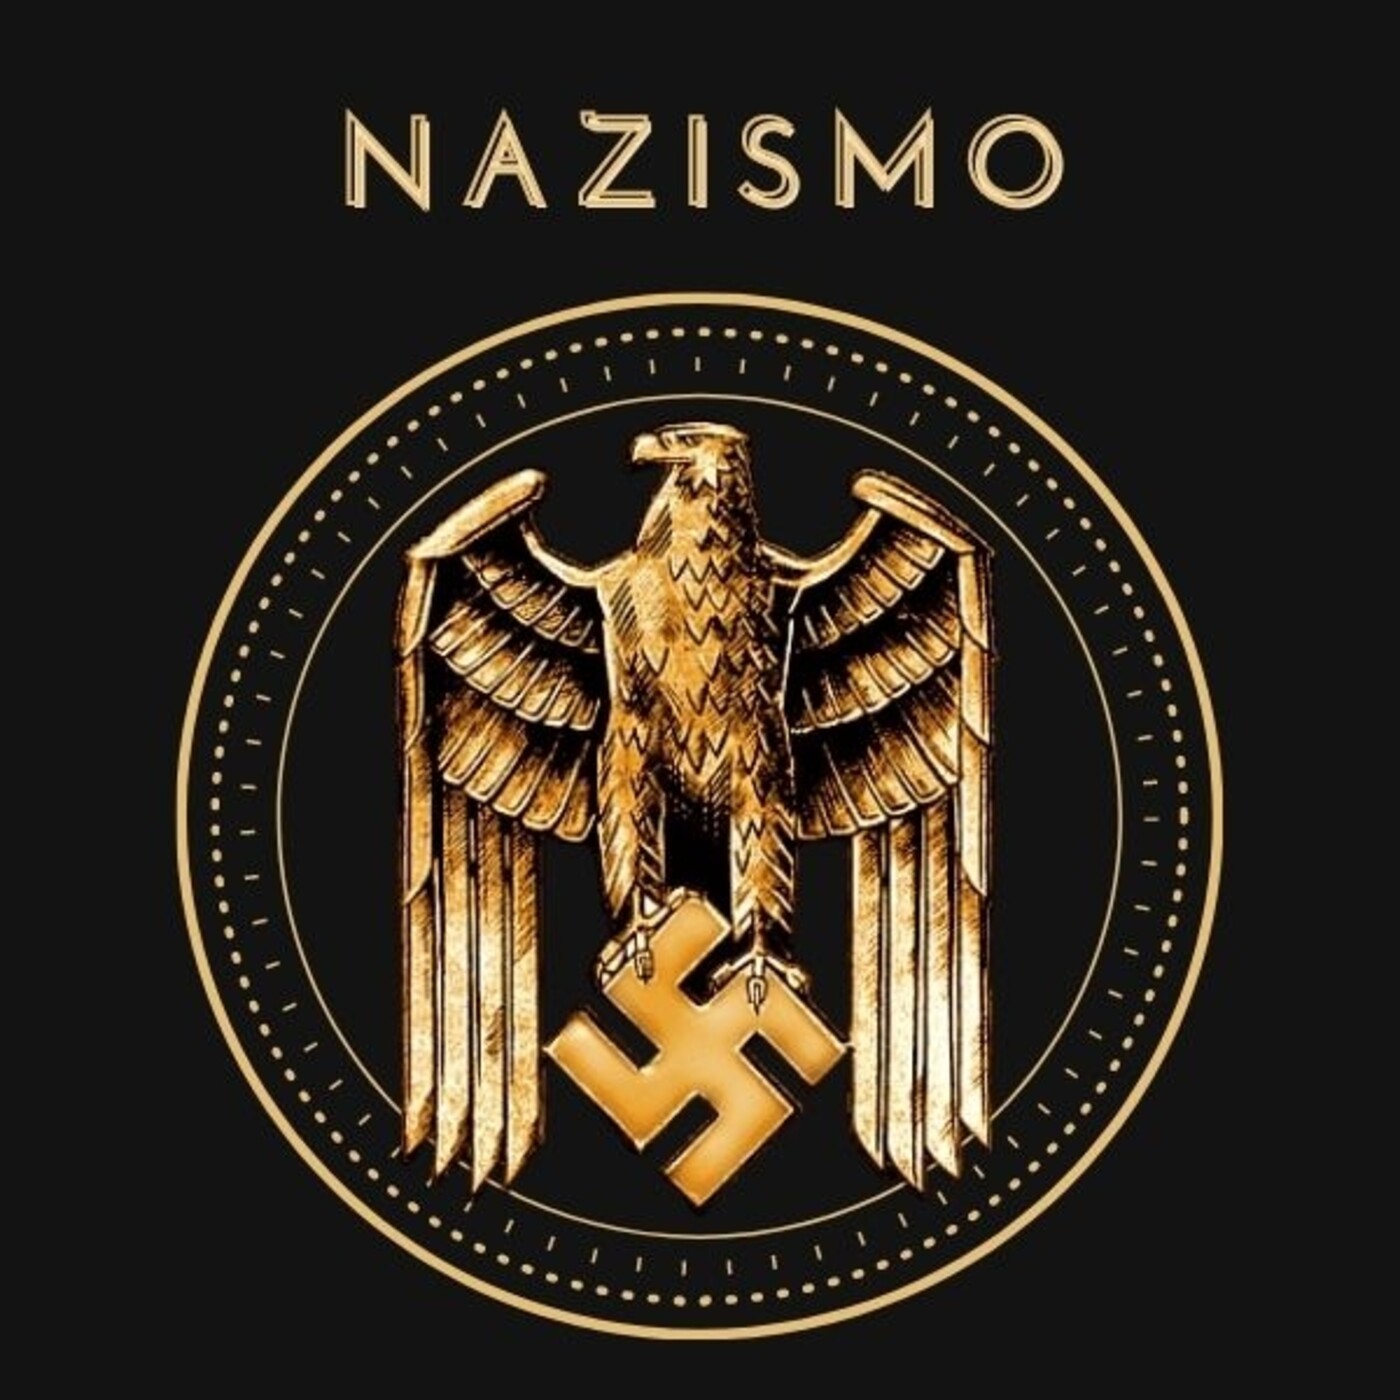 Ep. 1 Historia Oculta: Nazismo. Esoterismo y ocultismo en el ascenso de Hitler y el Tercer Reich